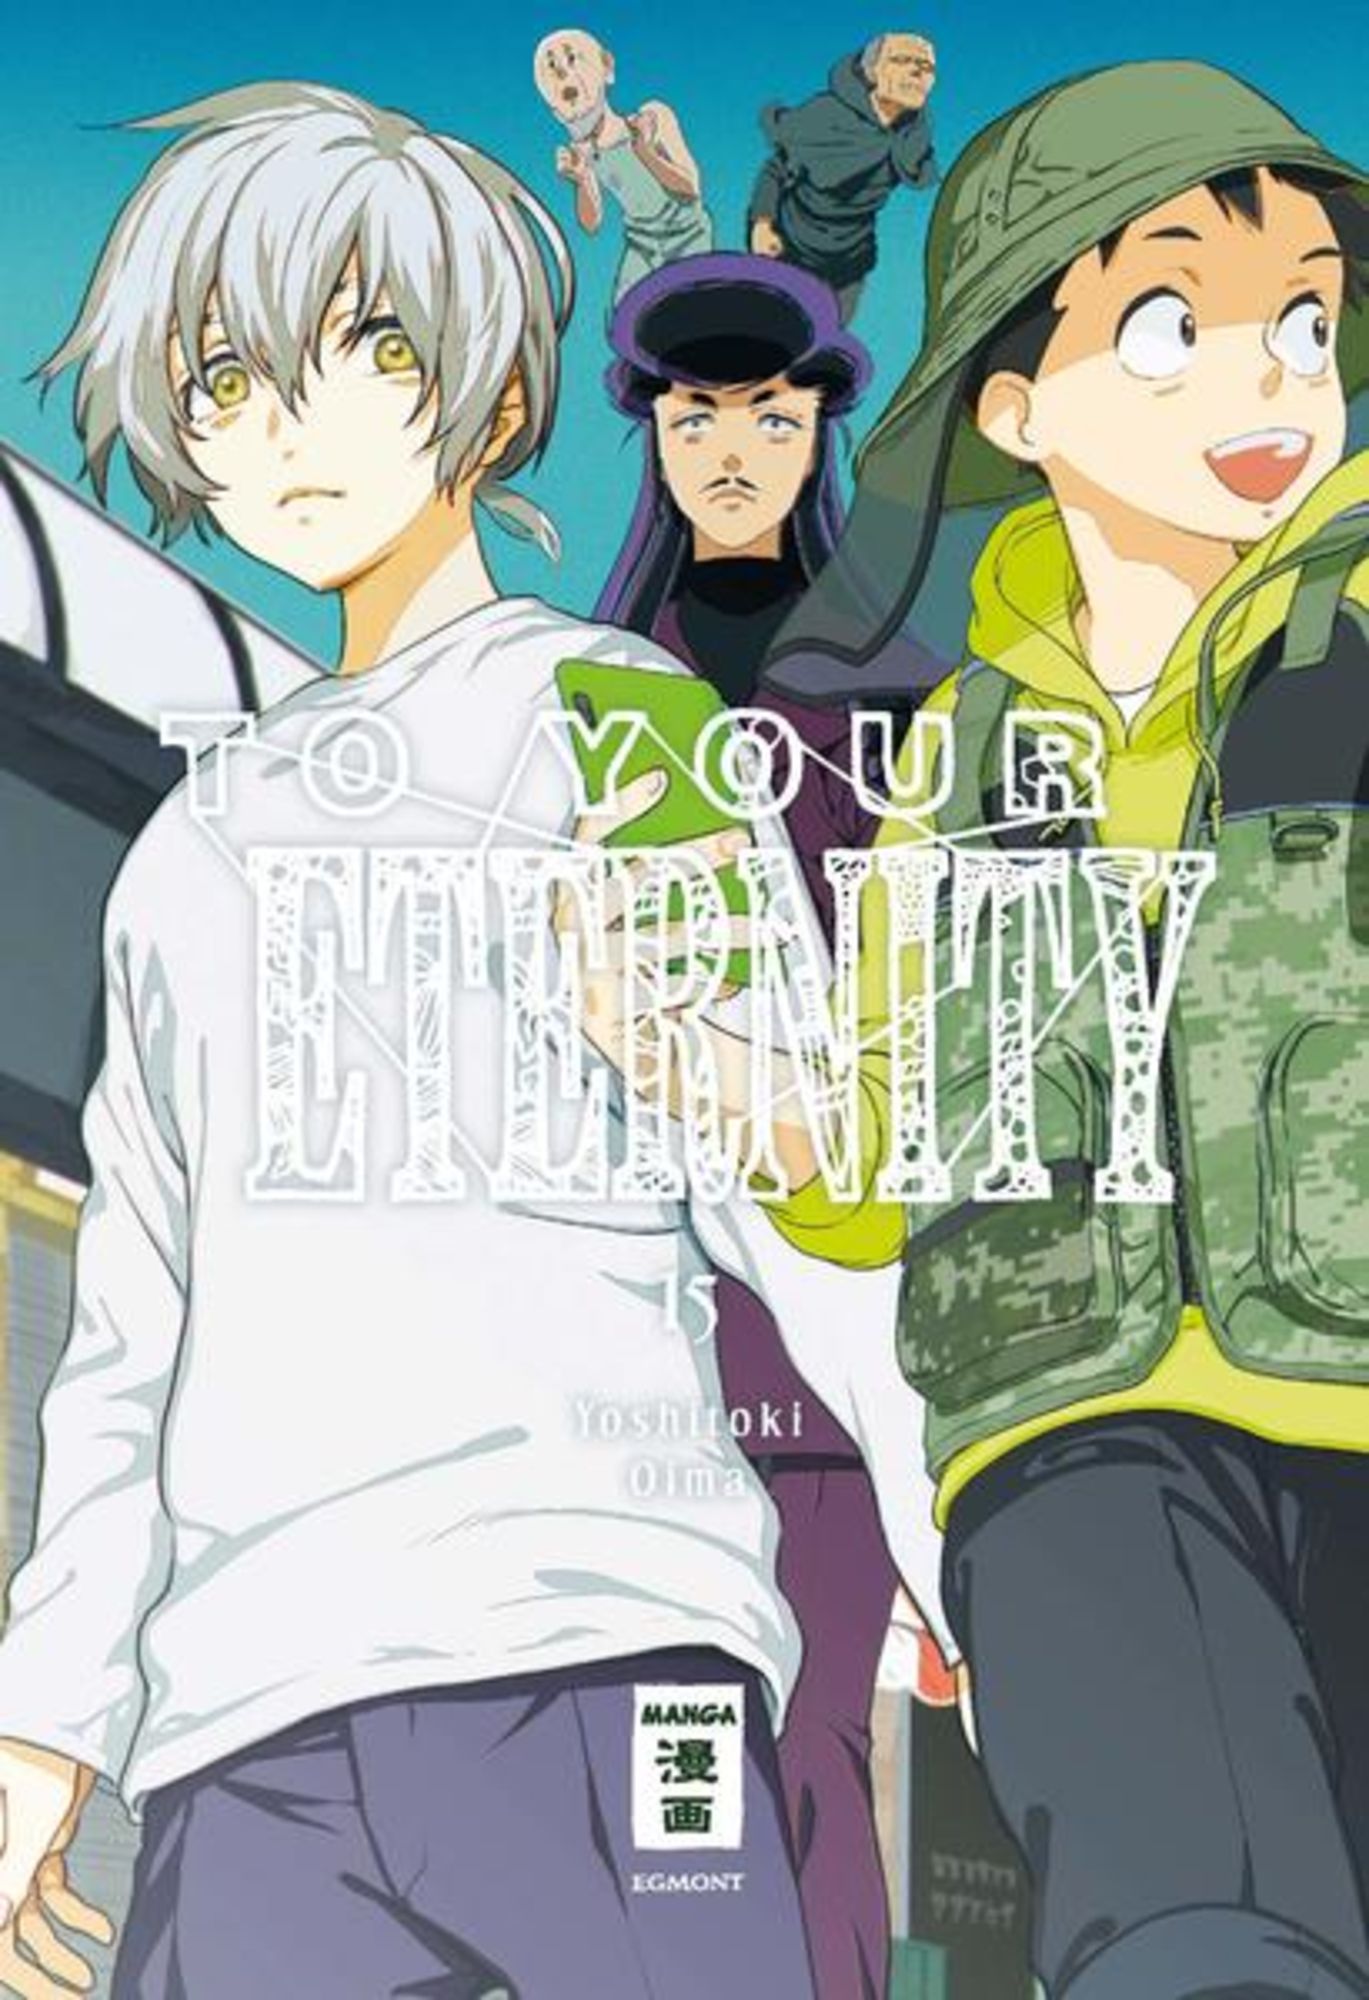 Fumetsu No Anata E Manga To Your Eternity 15' von 'Yoshitoki Oima' - Buch - '978-3-7704-4371-0'